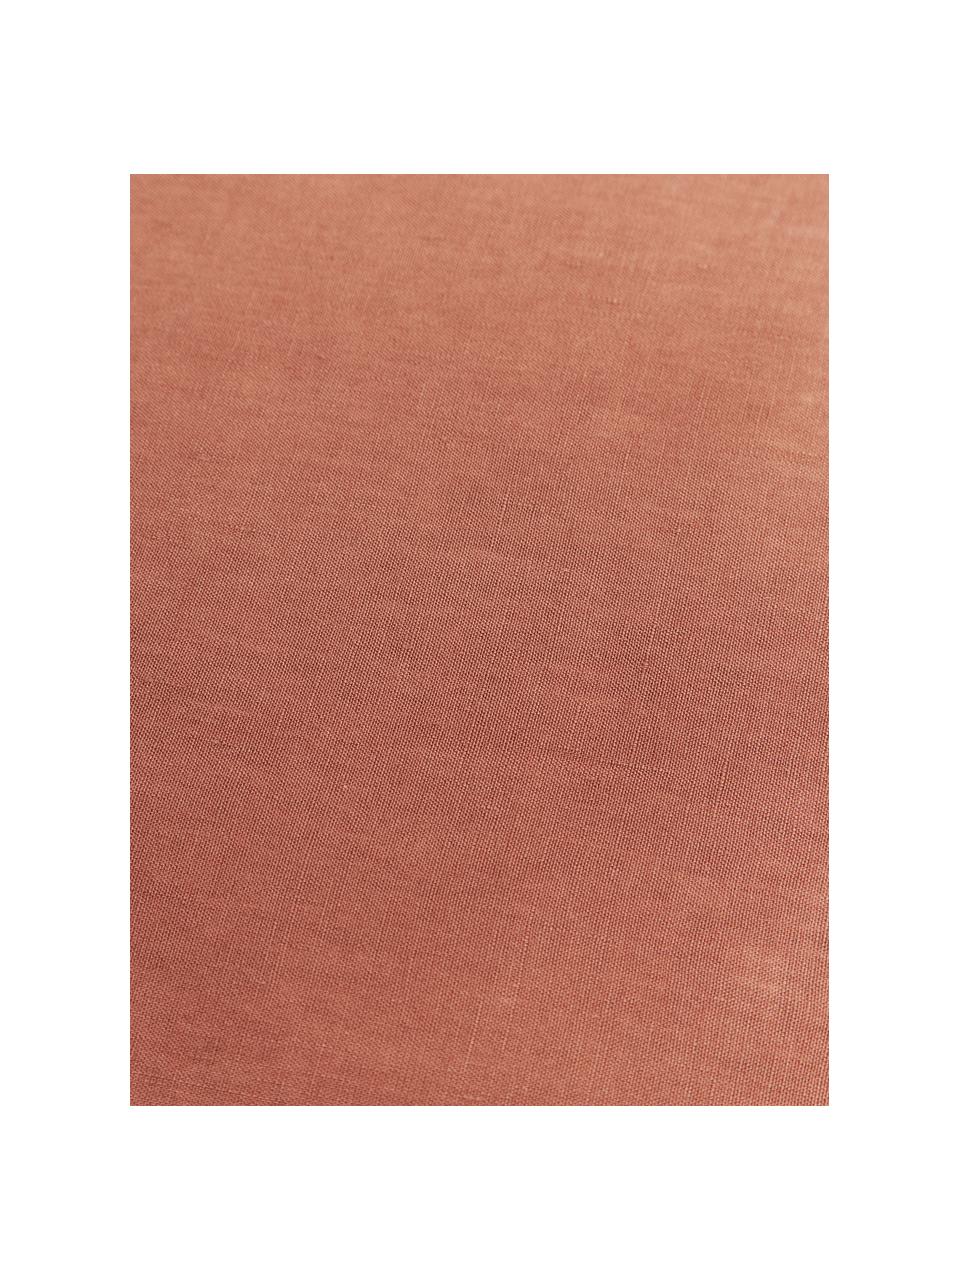 Leinen-Tischdecke Kennedy in Terrakotta mit Umkettelung, 100 % gewaschenes Leinen, European Flax zertifiziert, Terrakotta, B 140 x L 250 cm